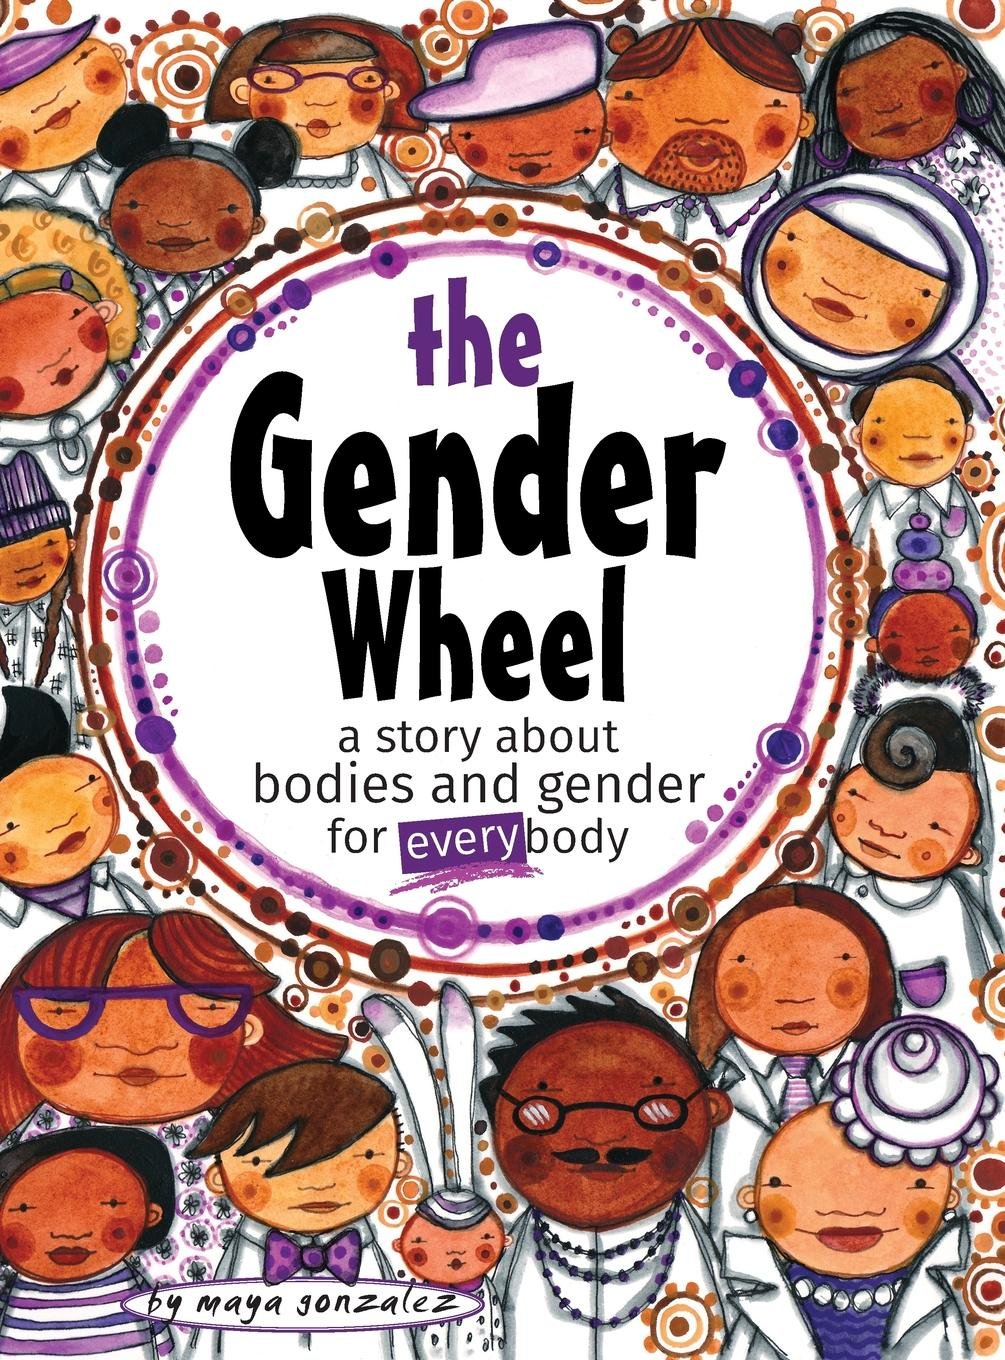 Decolonize Your Bookshelf: The Gender Wheel by Maya Gonzalez